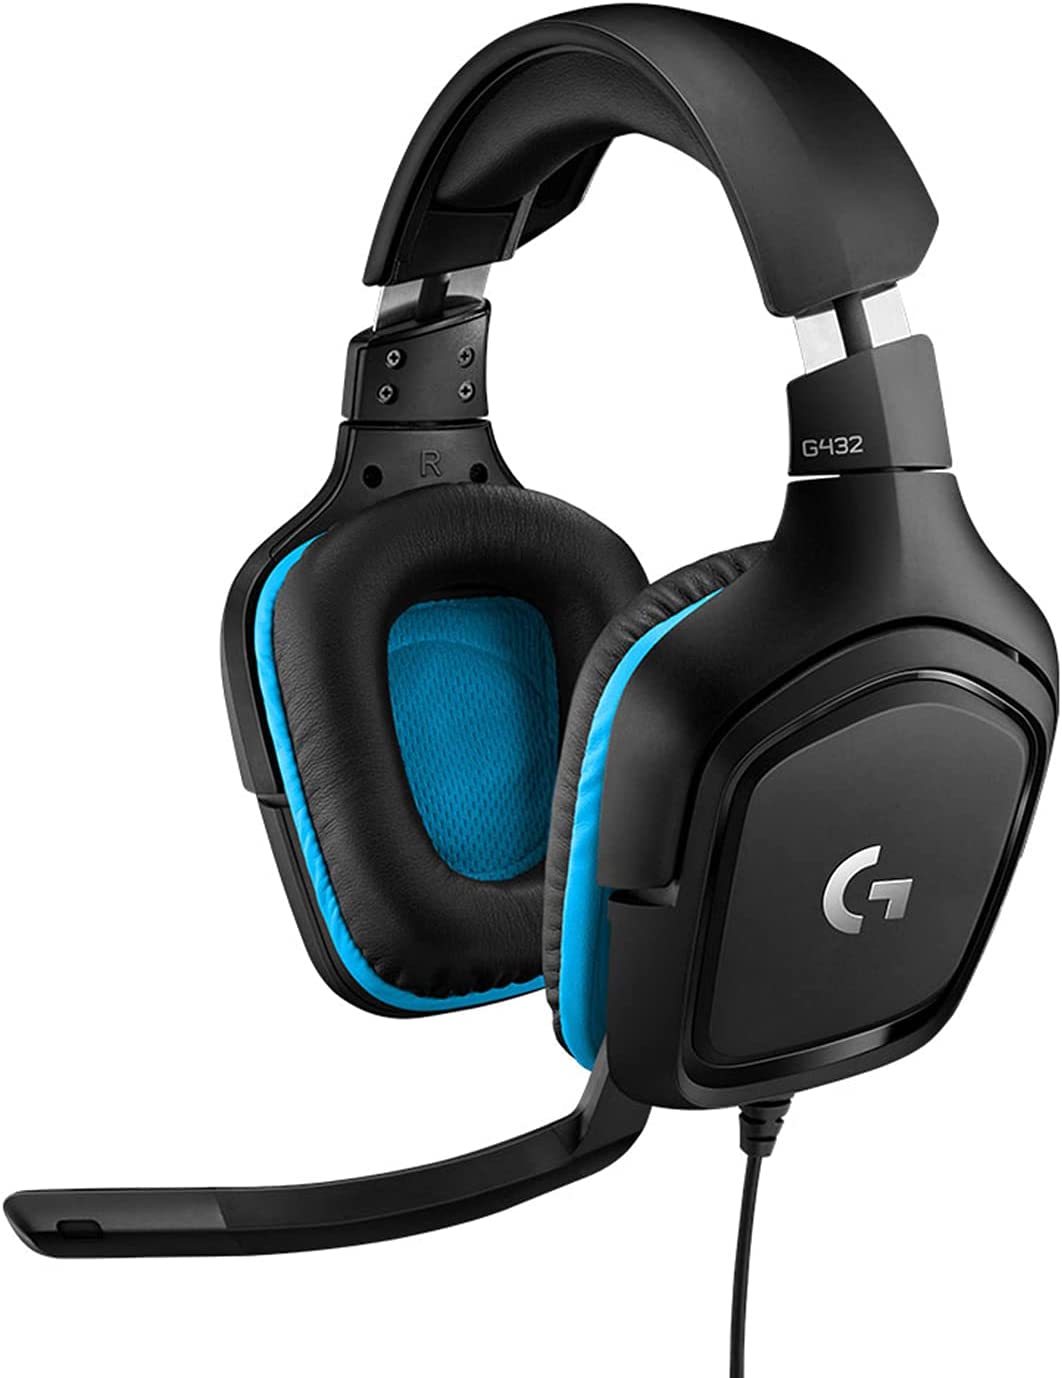 (G6) Logitech G432 kabelgebundenes Gaming-Headset, 7.1 Surround Sound